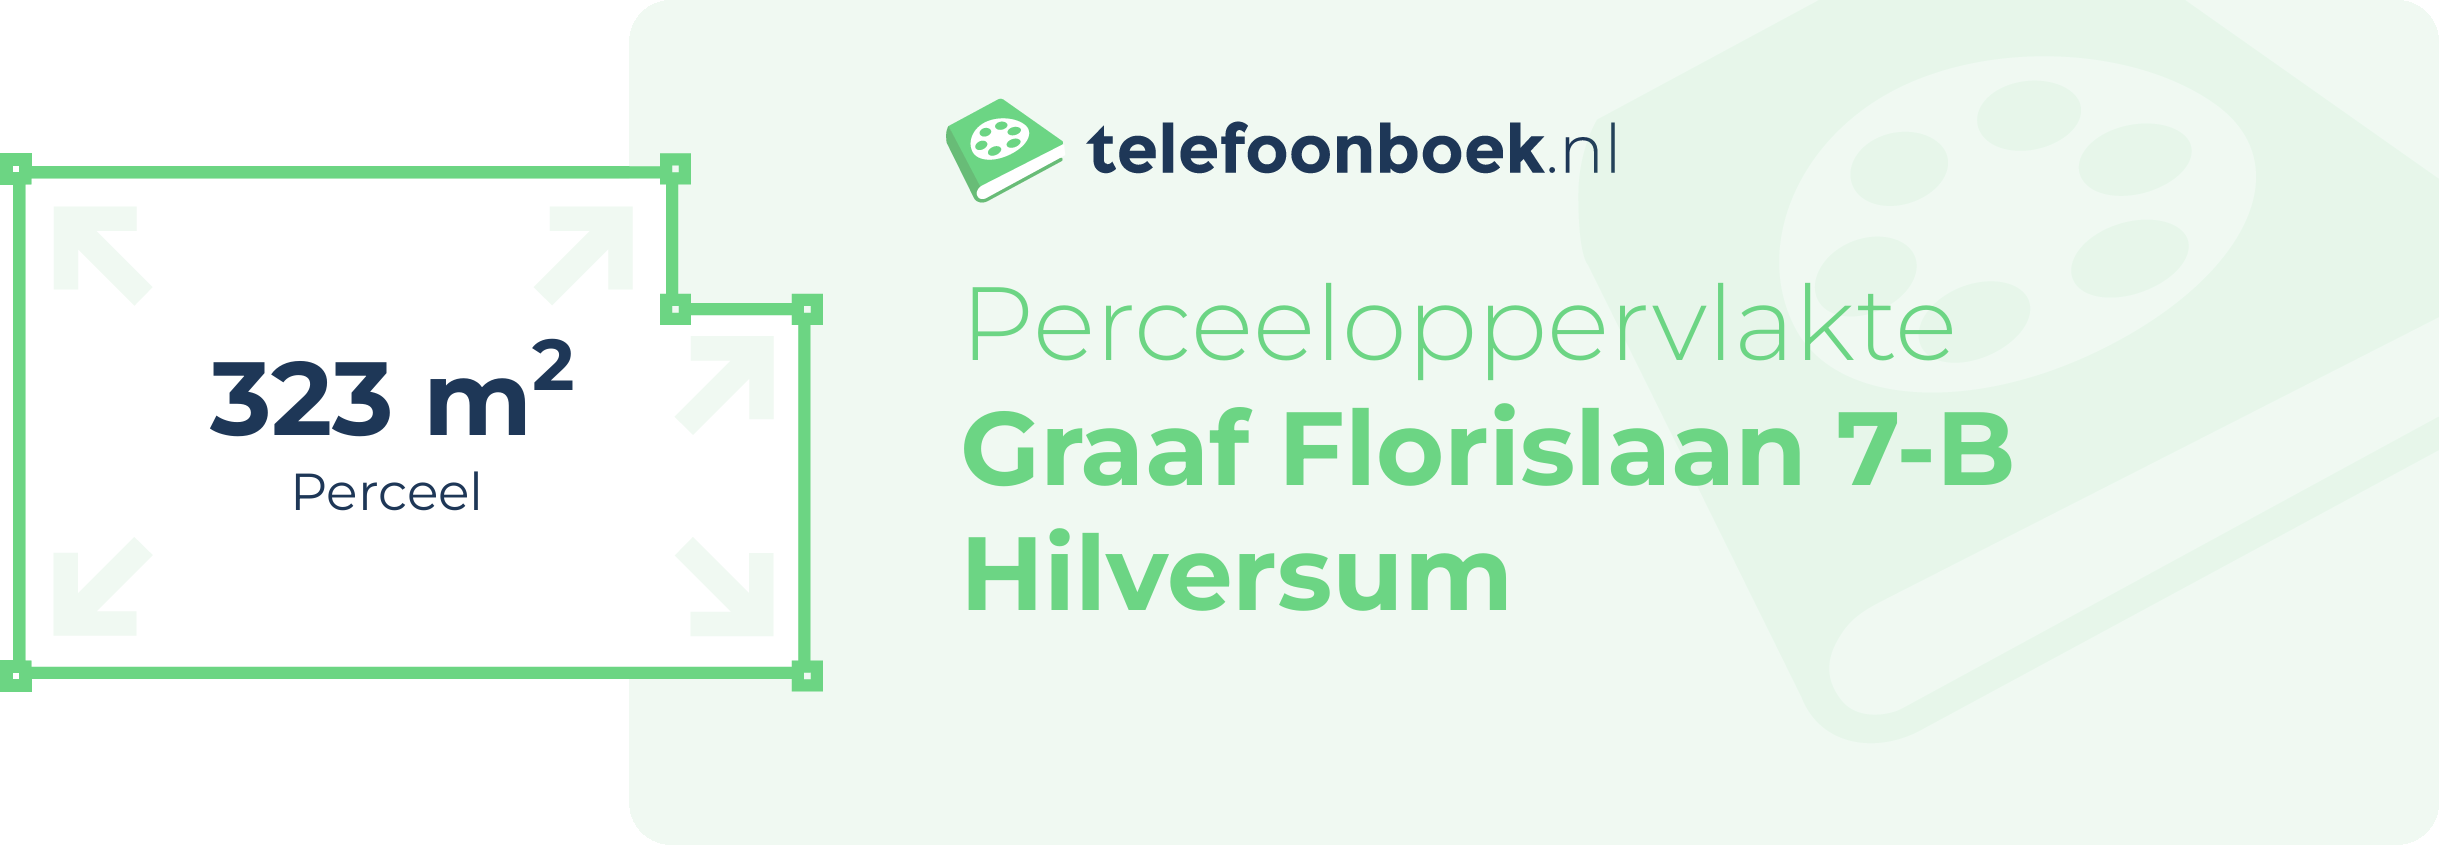 Perceeloppervlakte Graaf Florislaan 7-B Hilversum